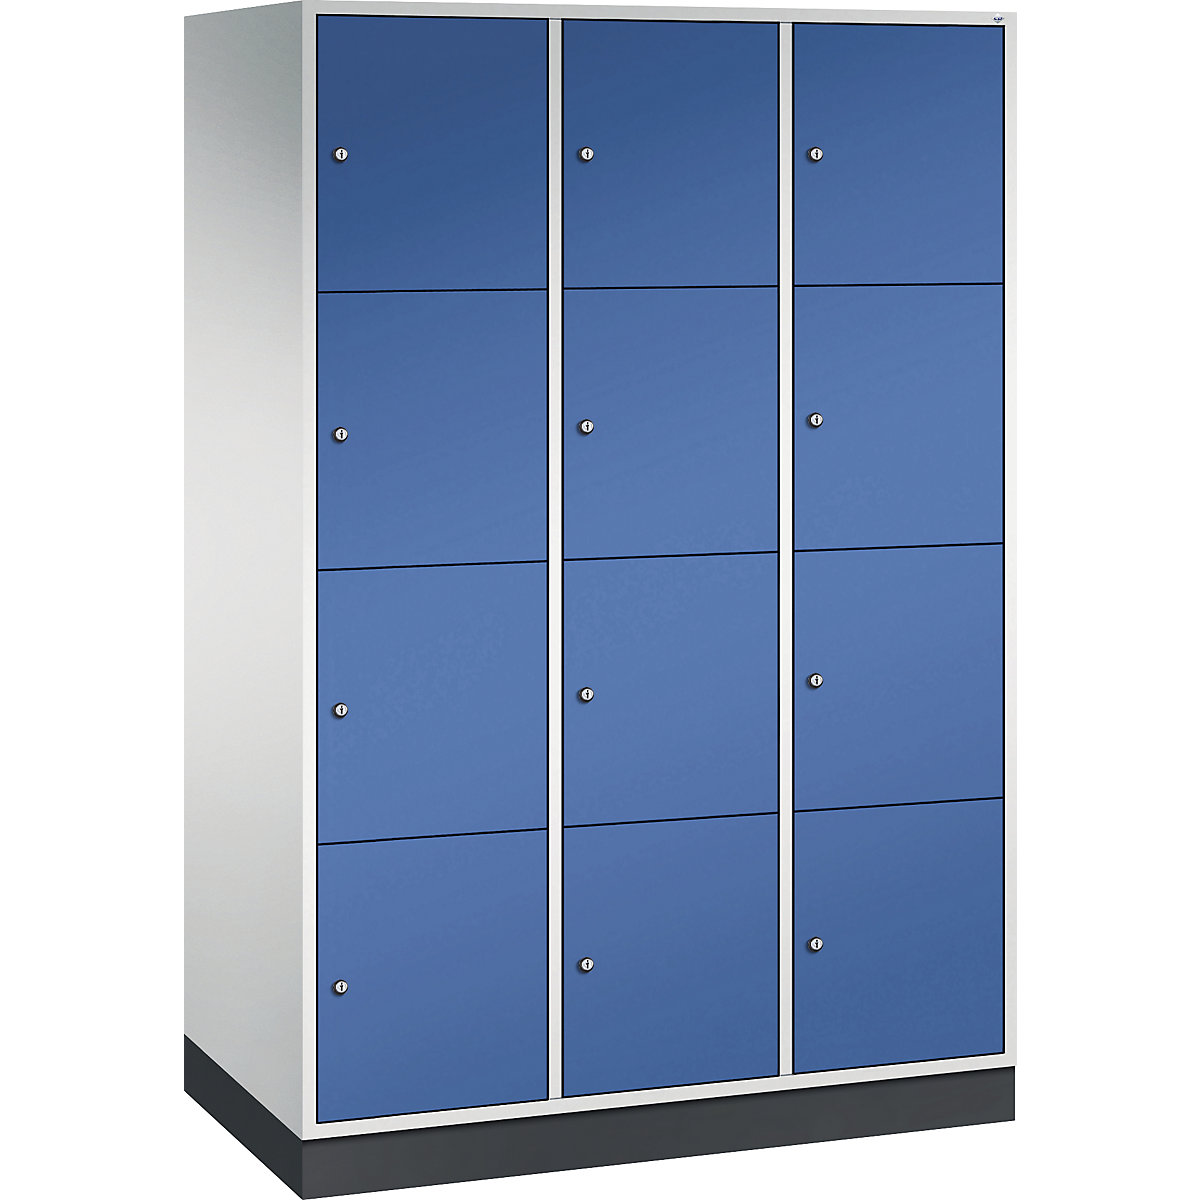 Vestiaire multicases en acier INTRO, casiers hauteur 435 mm – C+P, l x p 1220 x 600 mm, 12 casiers, corps gris clair, portes bleu gentiane-16